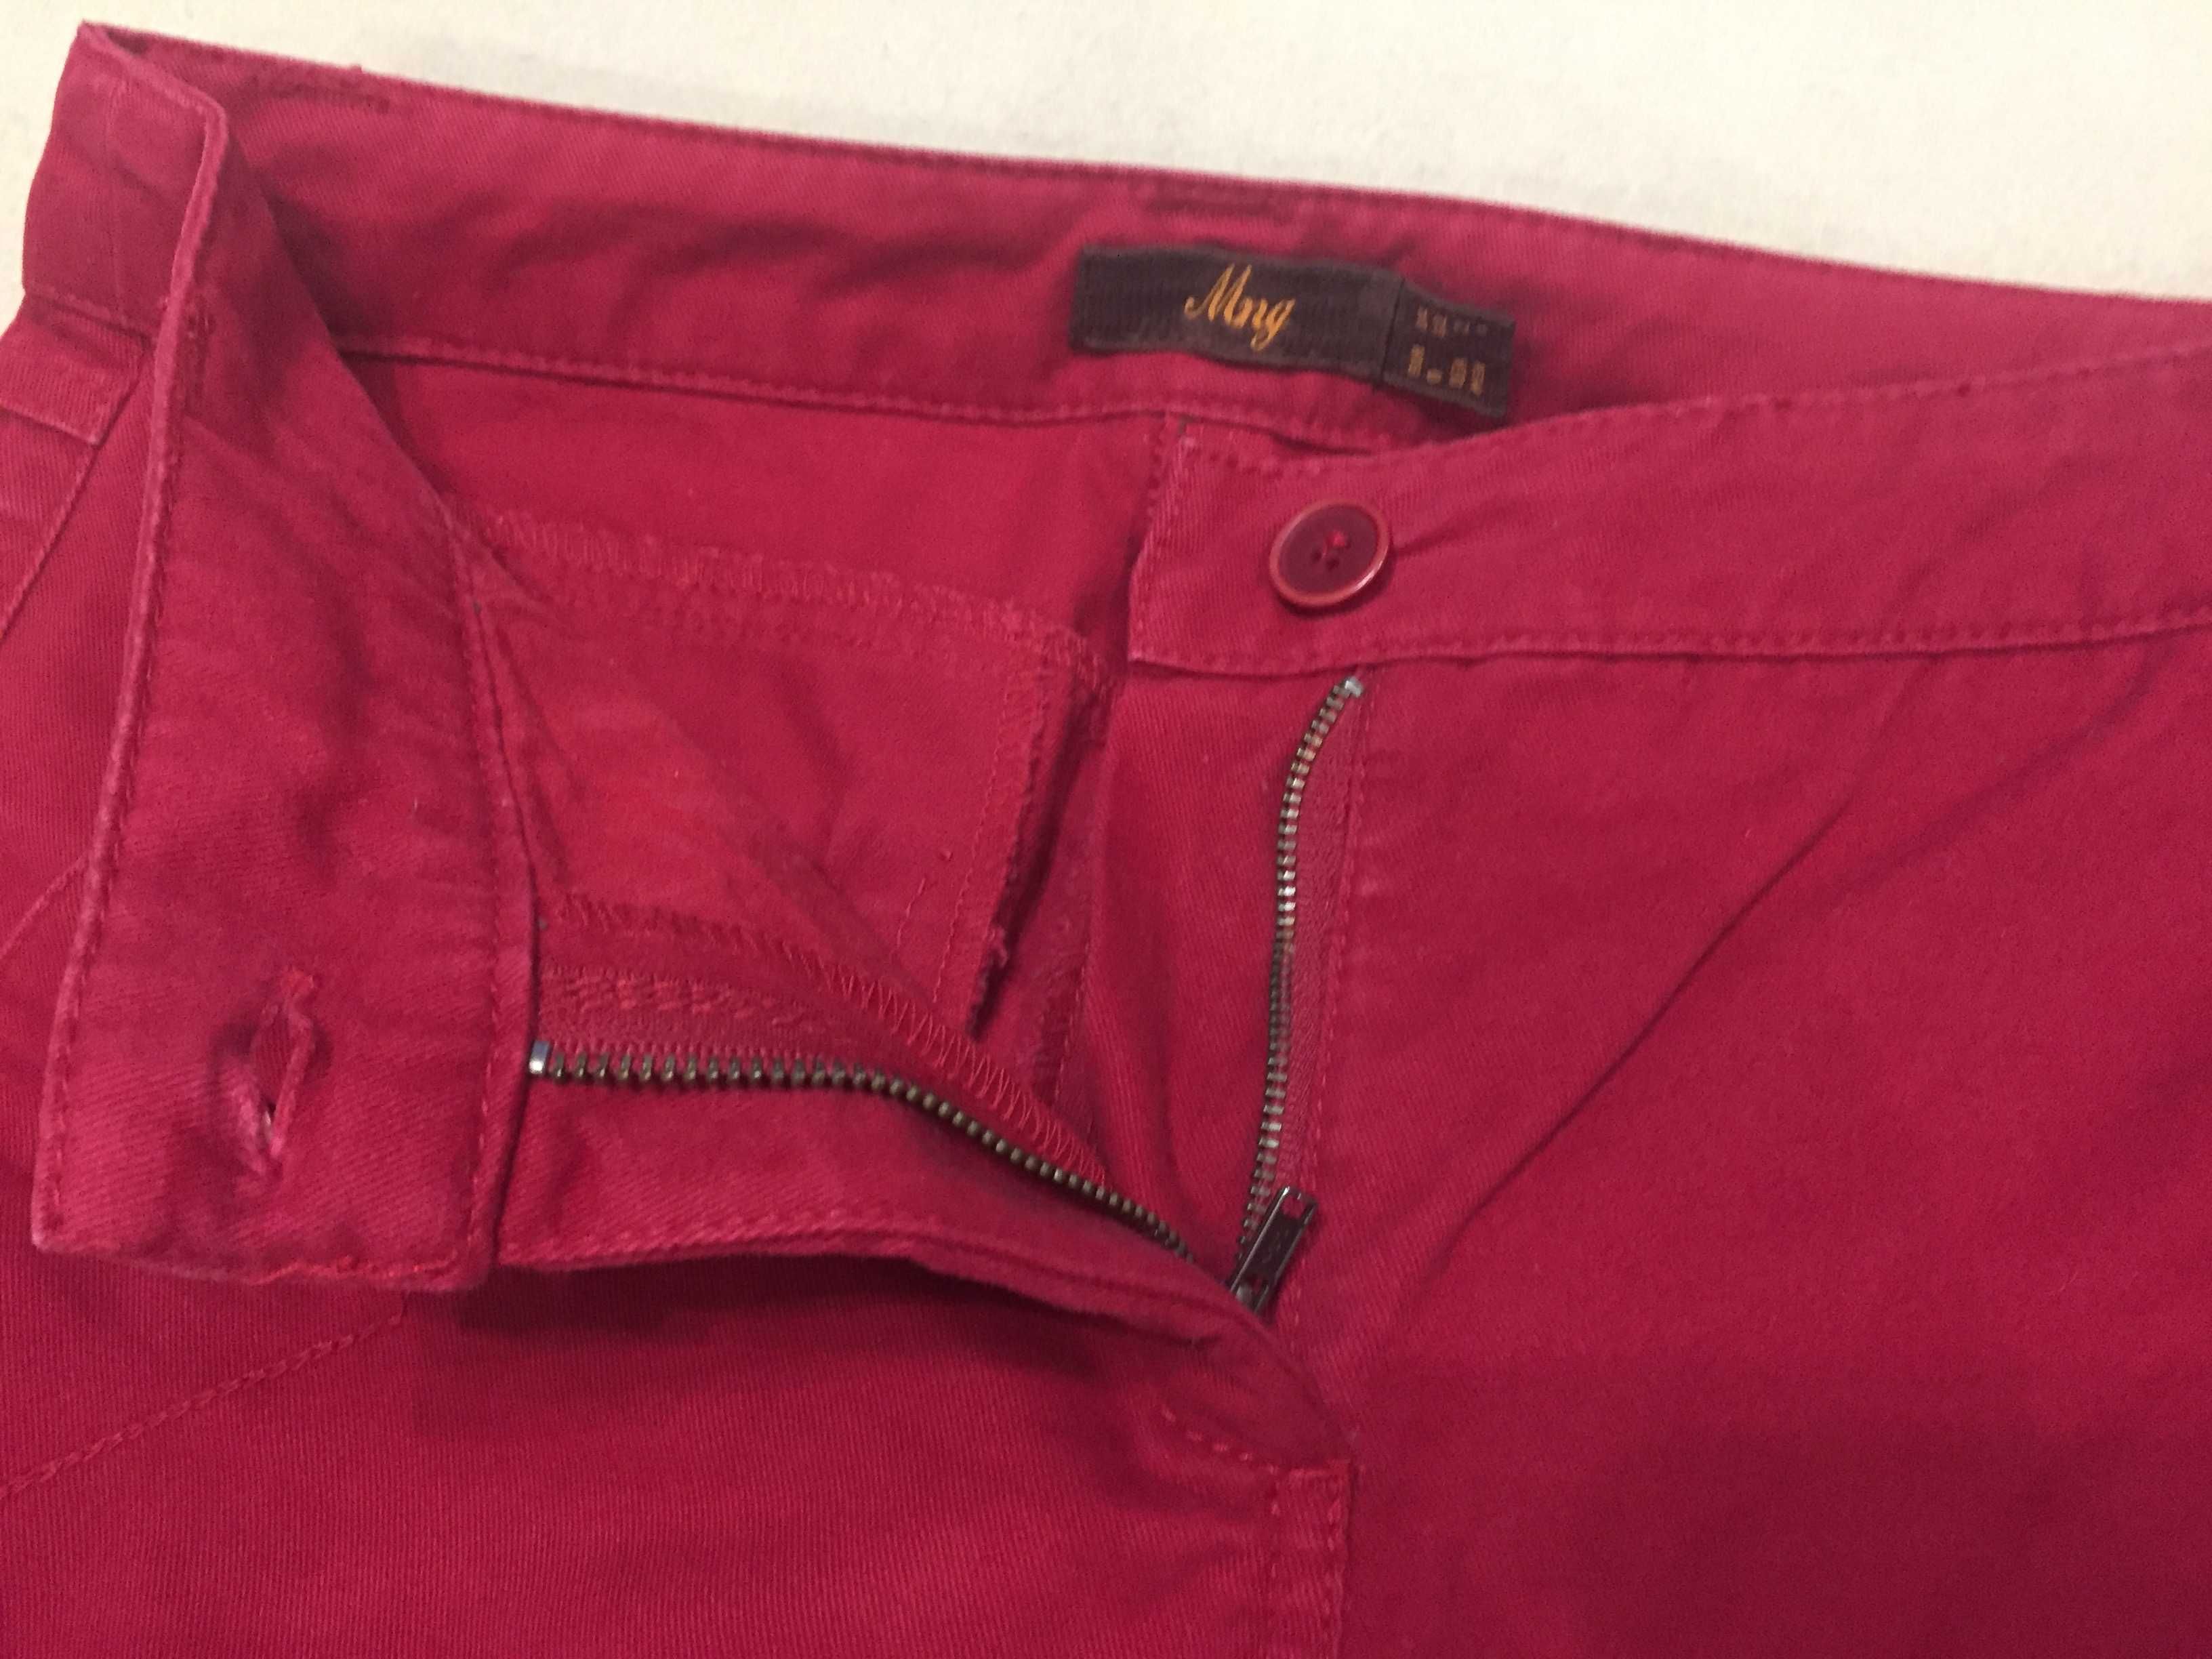 Штани жіночі Mаngо, червоні, cotton, розмір 34, стан нових